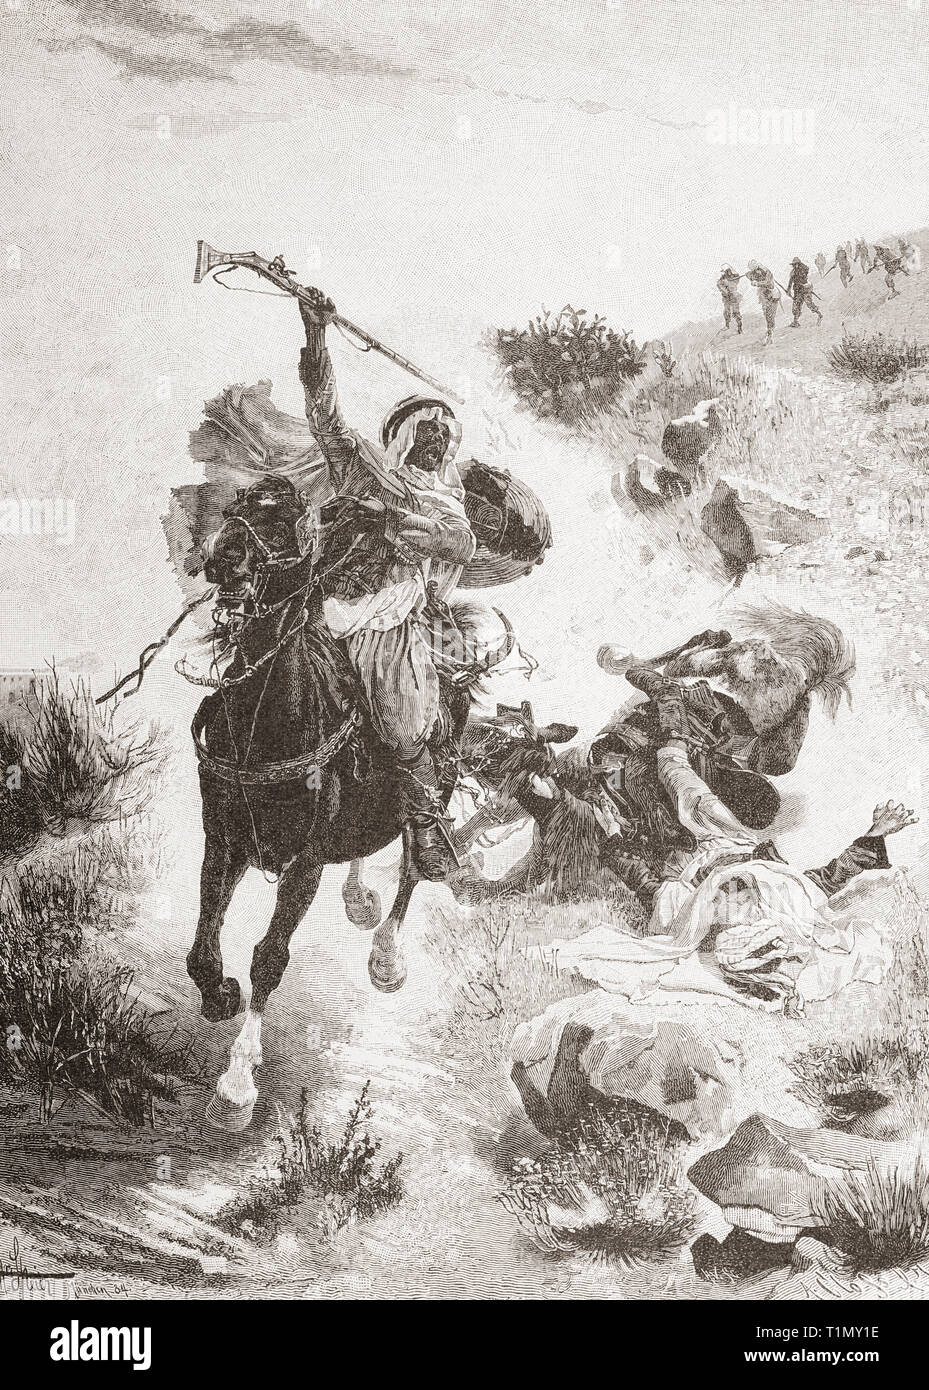 Tunesische Reiter. Von Ilustracion Artistica, veröffentlicht 1887. Stockfoto